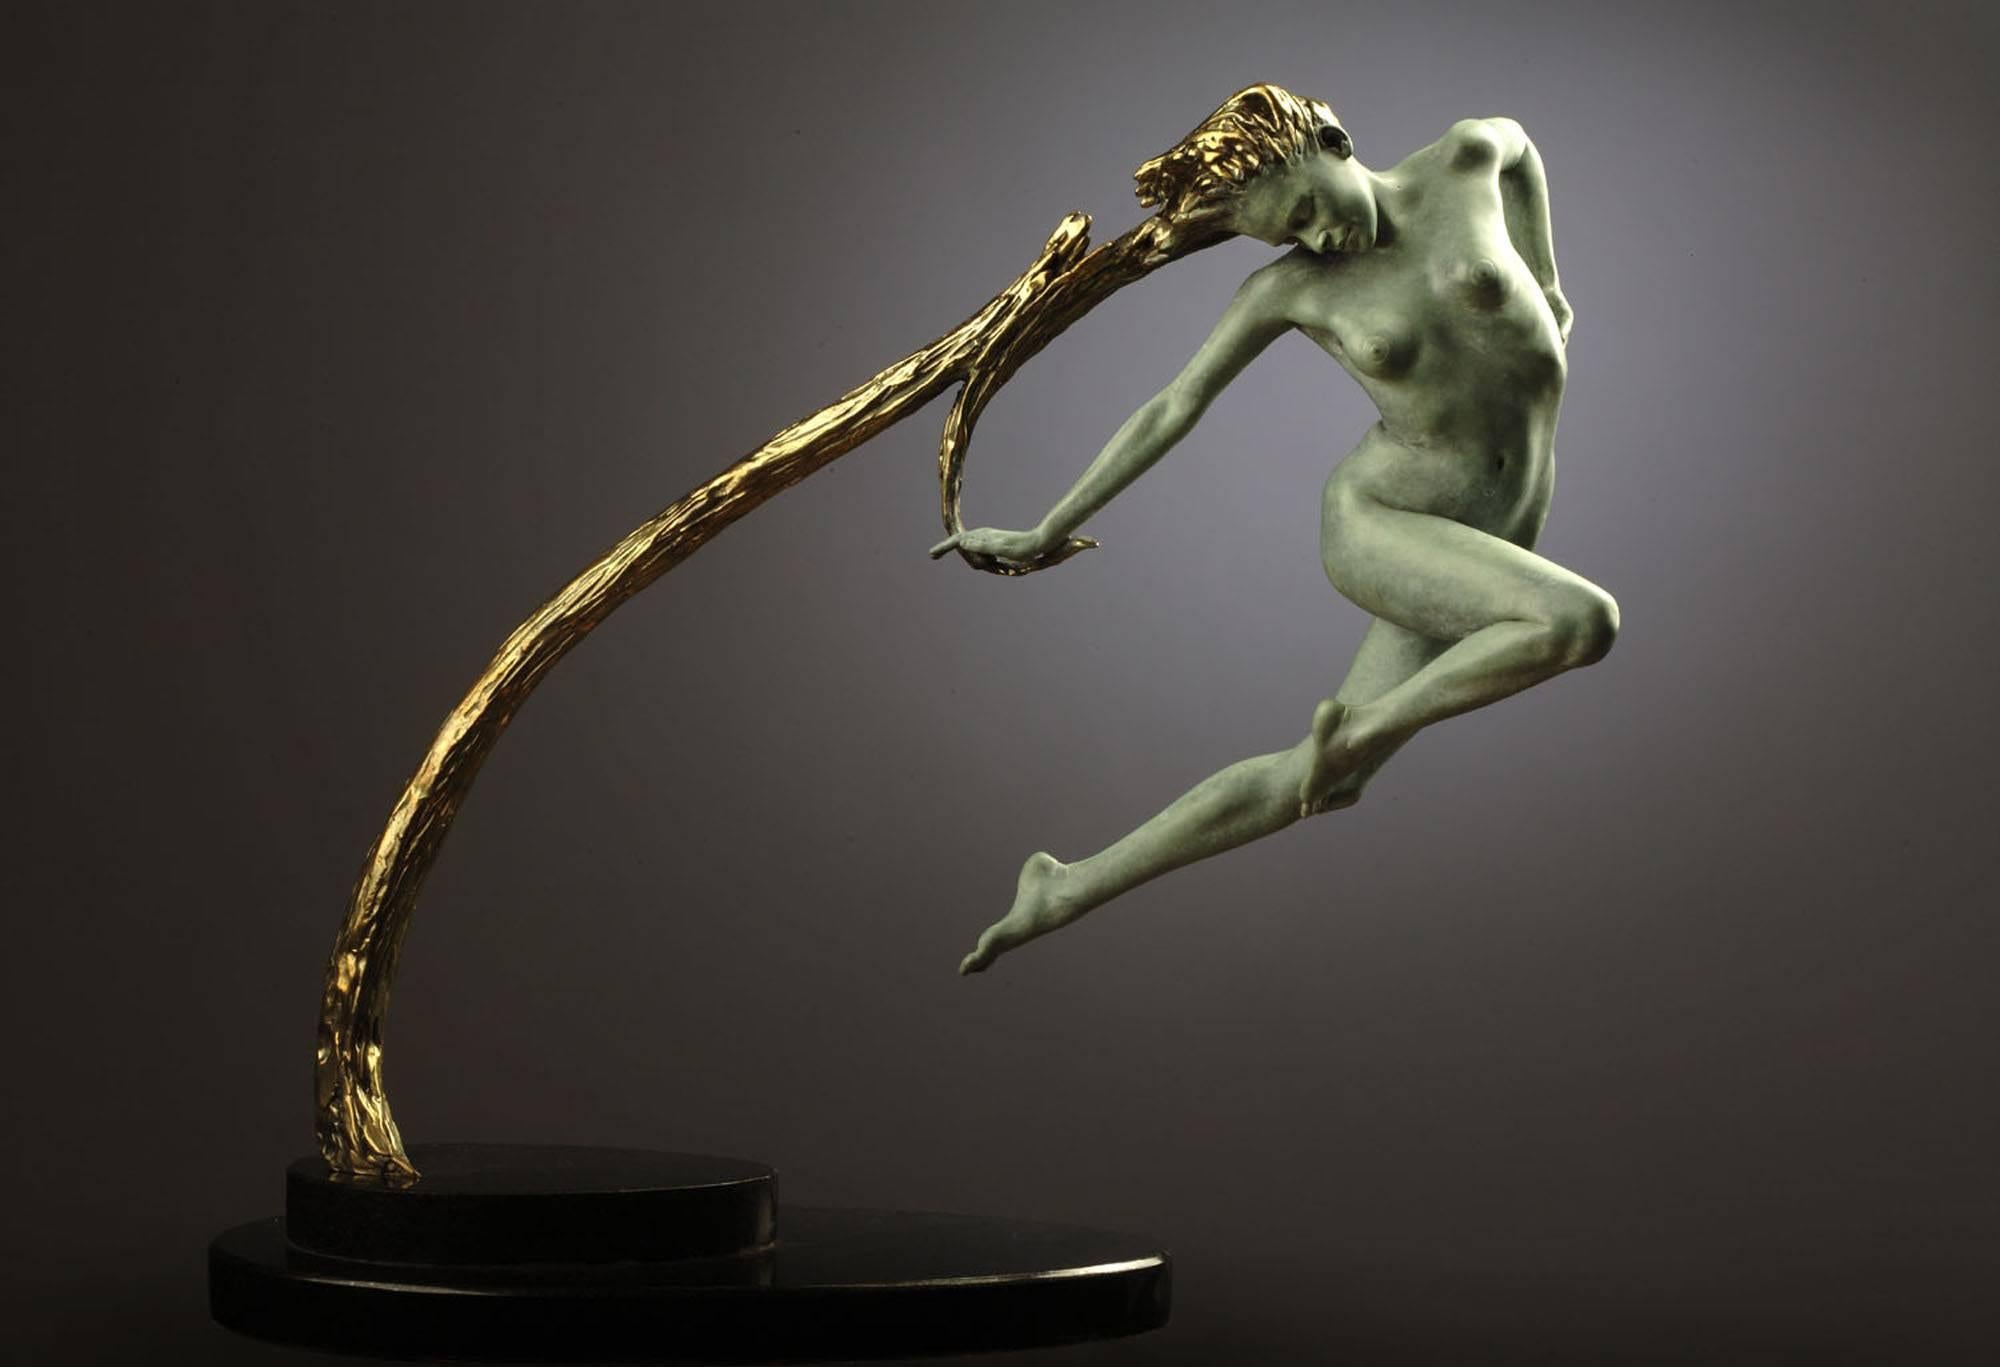 Une superbe sculpture en bronze nue "Raiponce" inspirée du conte de fées allemand. 

Après une carrière réussie en Angleterre et en Irlande, Carl a rejoint CALLAGHAN Fine Paintings and Works of Art au début de l'année 2004 afin de se consacrer à la